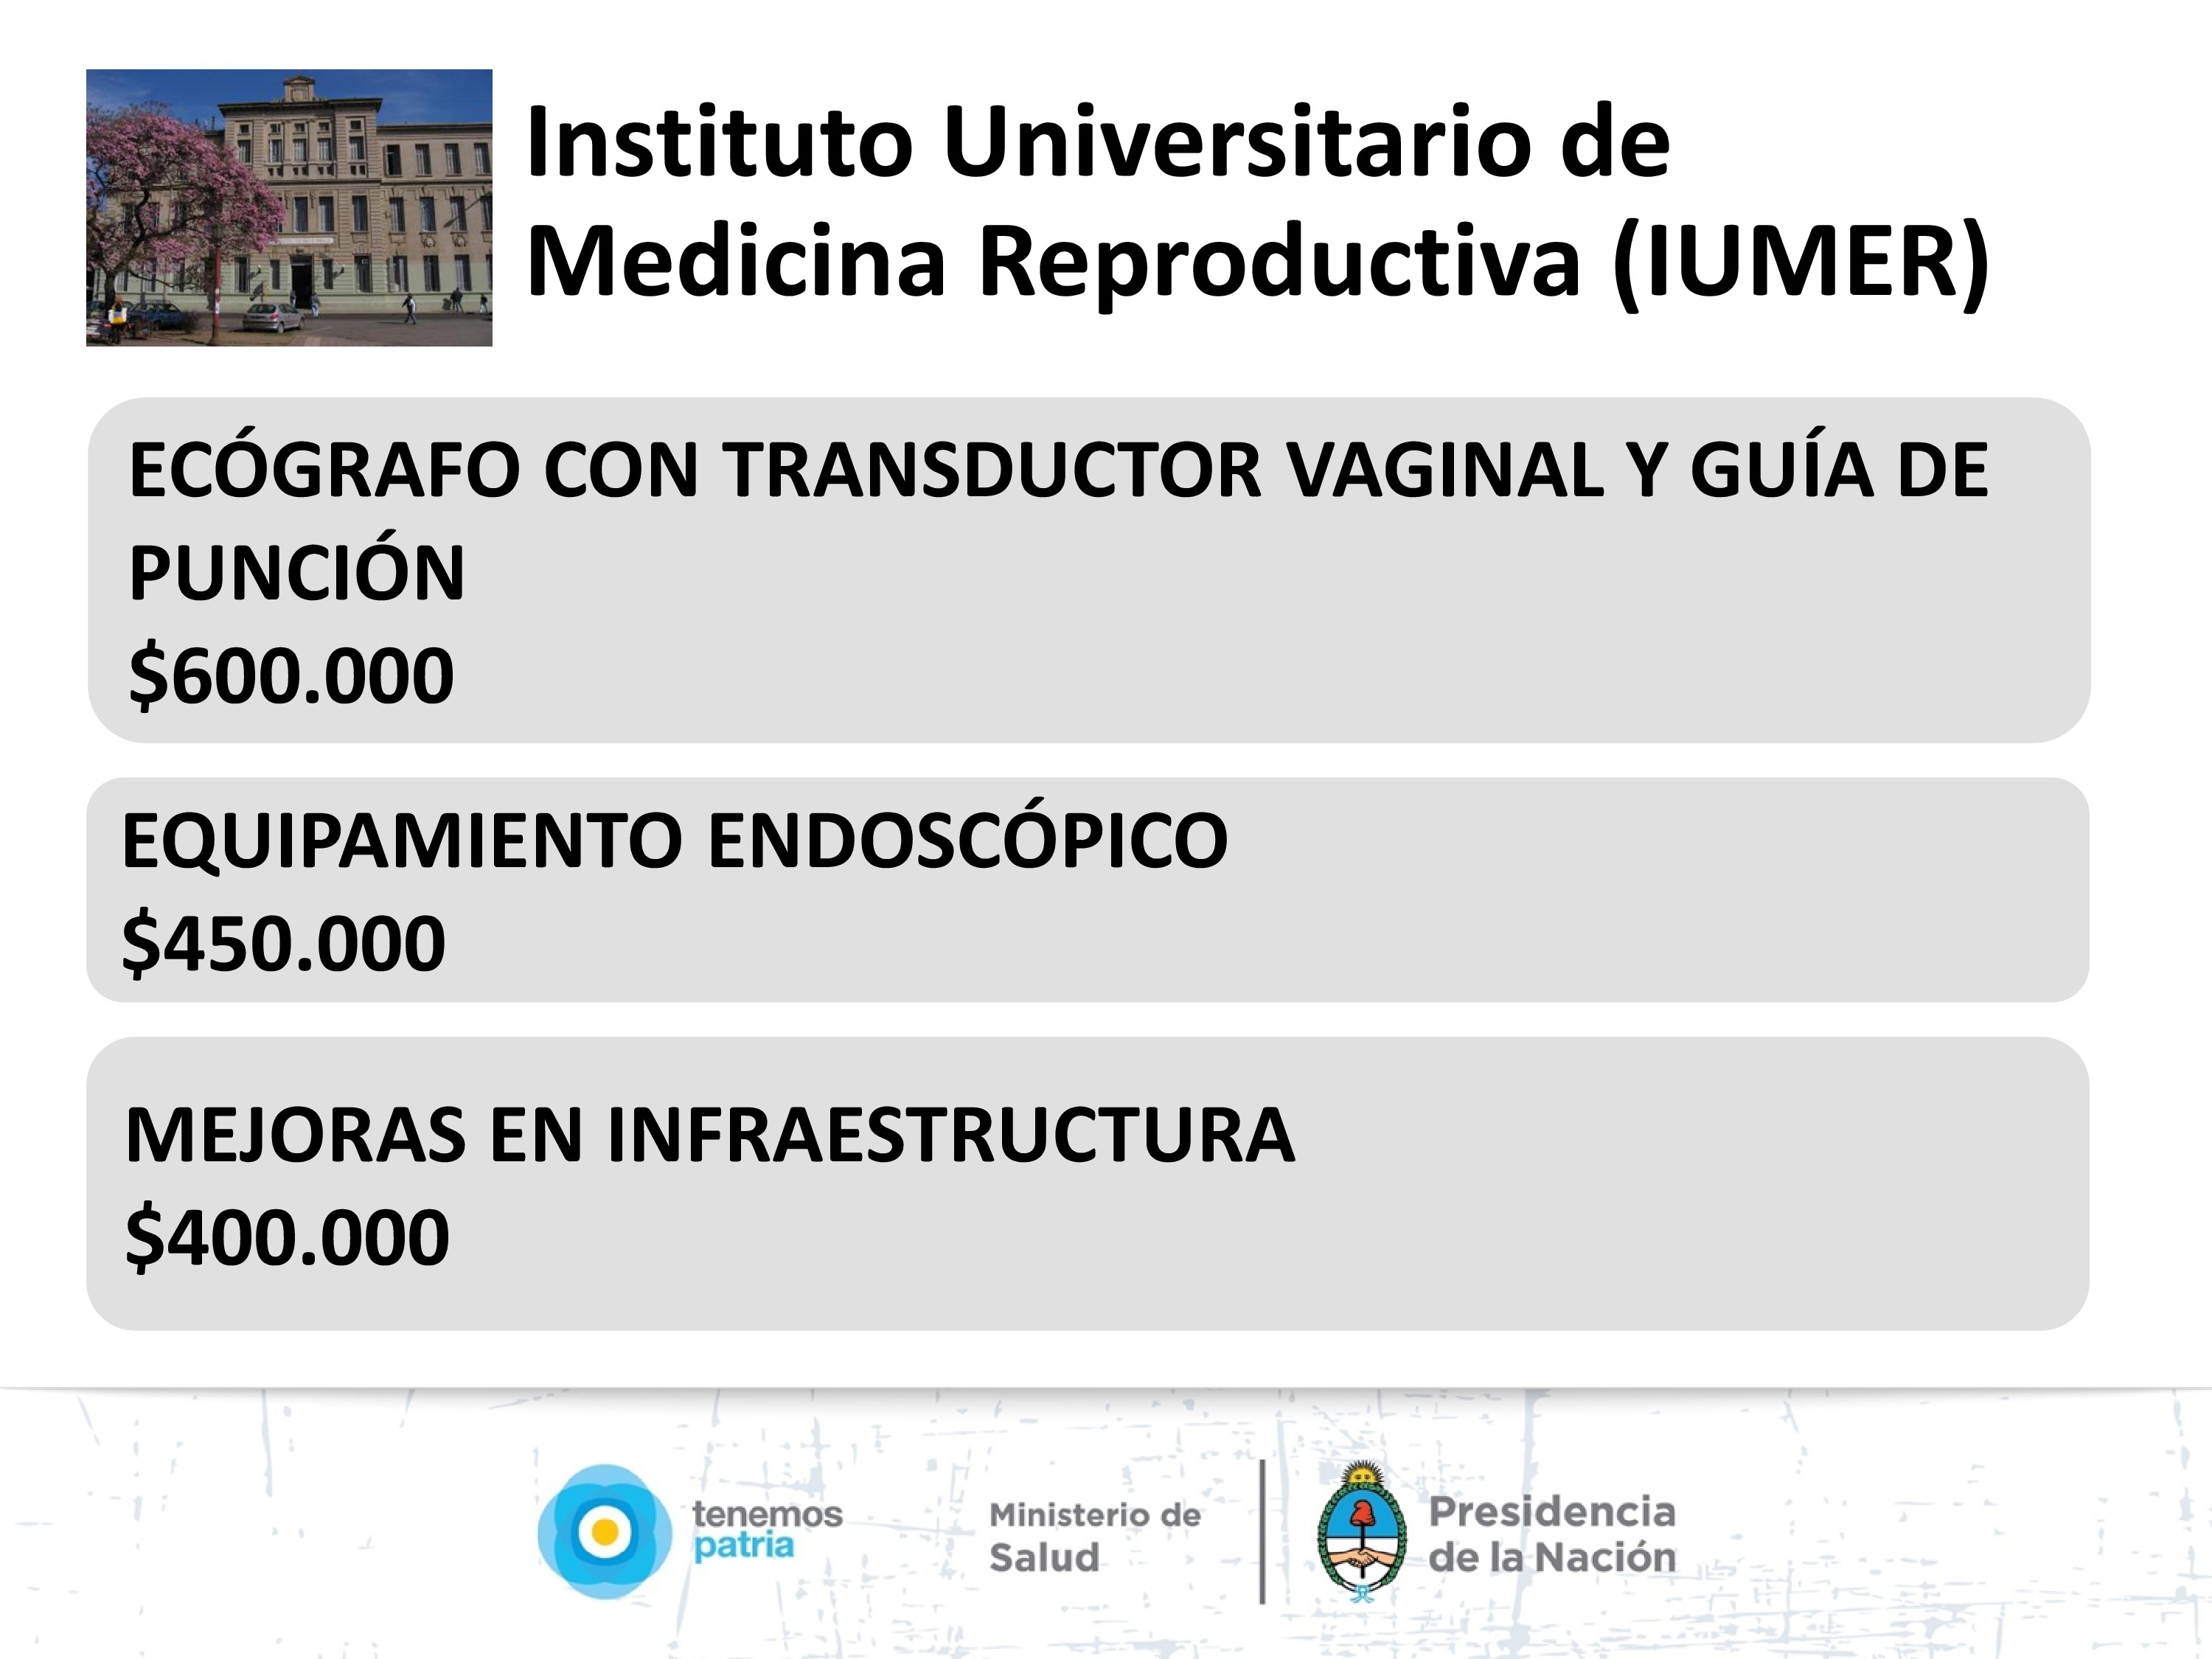 Instituto Universitario de Medicina Reproductiva, Córdoba. 